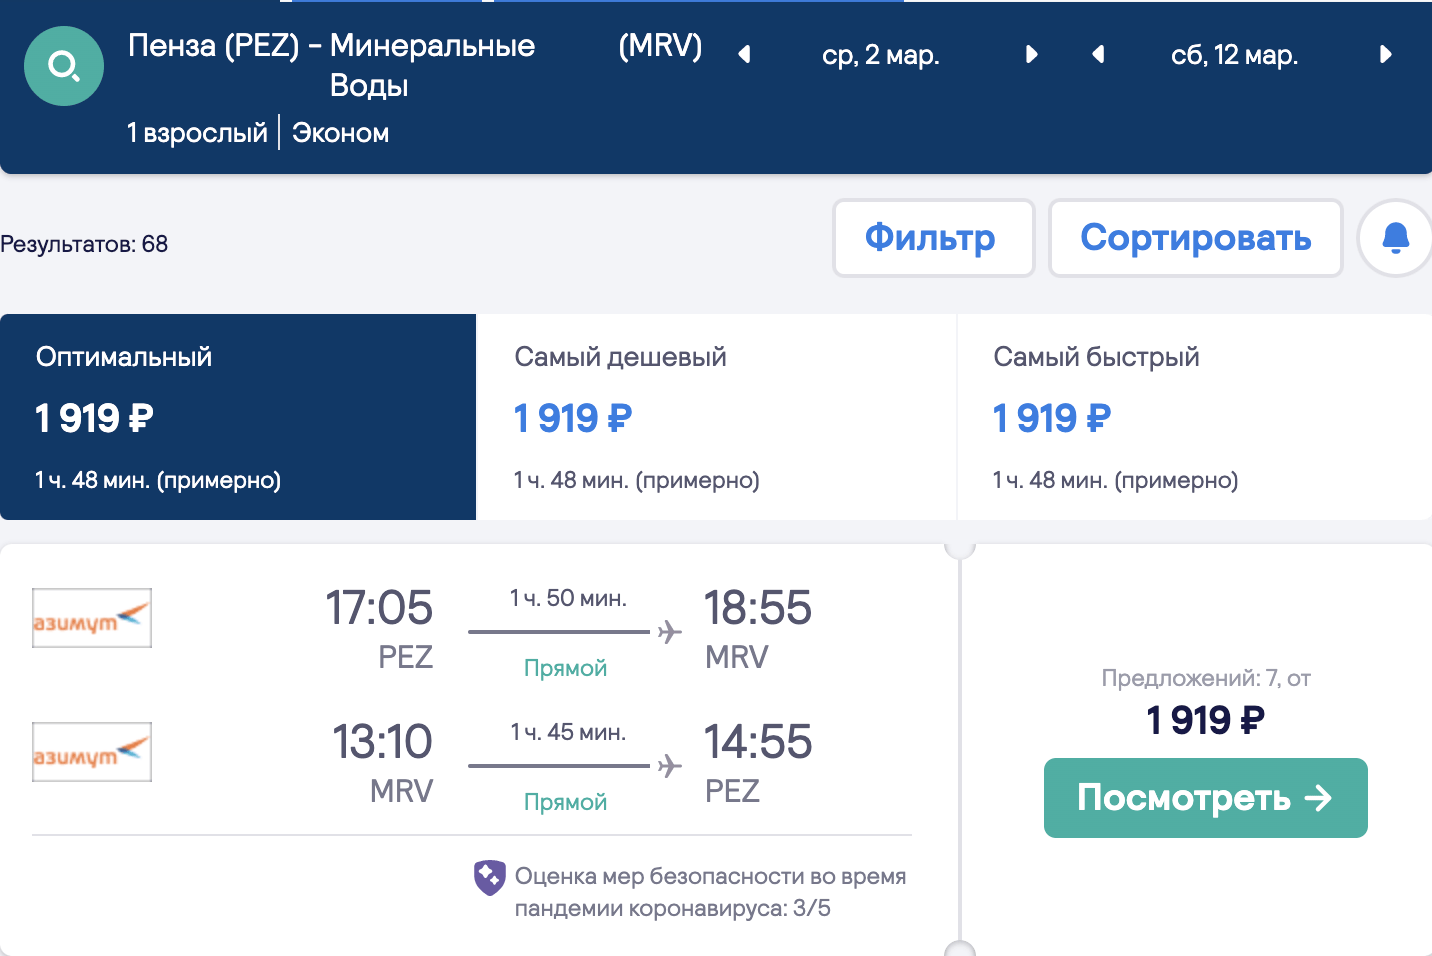 Olcsó repülőjegyek széles választéka régiókból Krasznodarba és Minvodyba 1800₽-tól oda-vissza